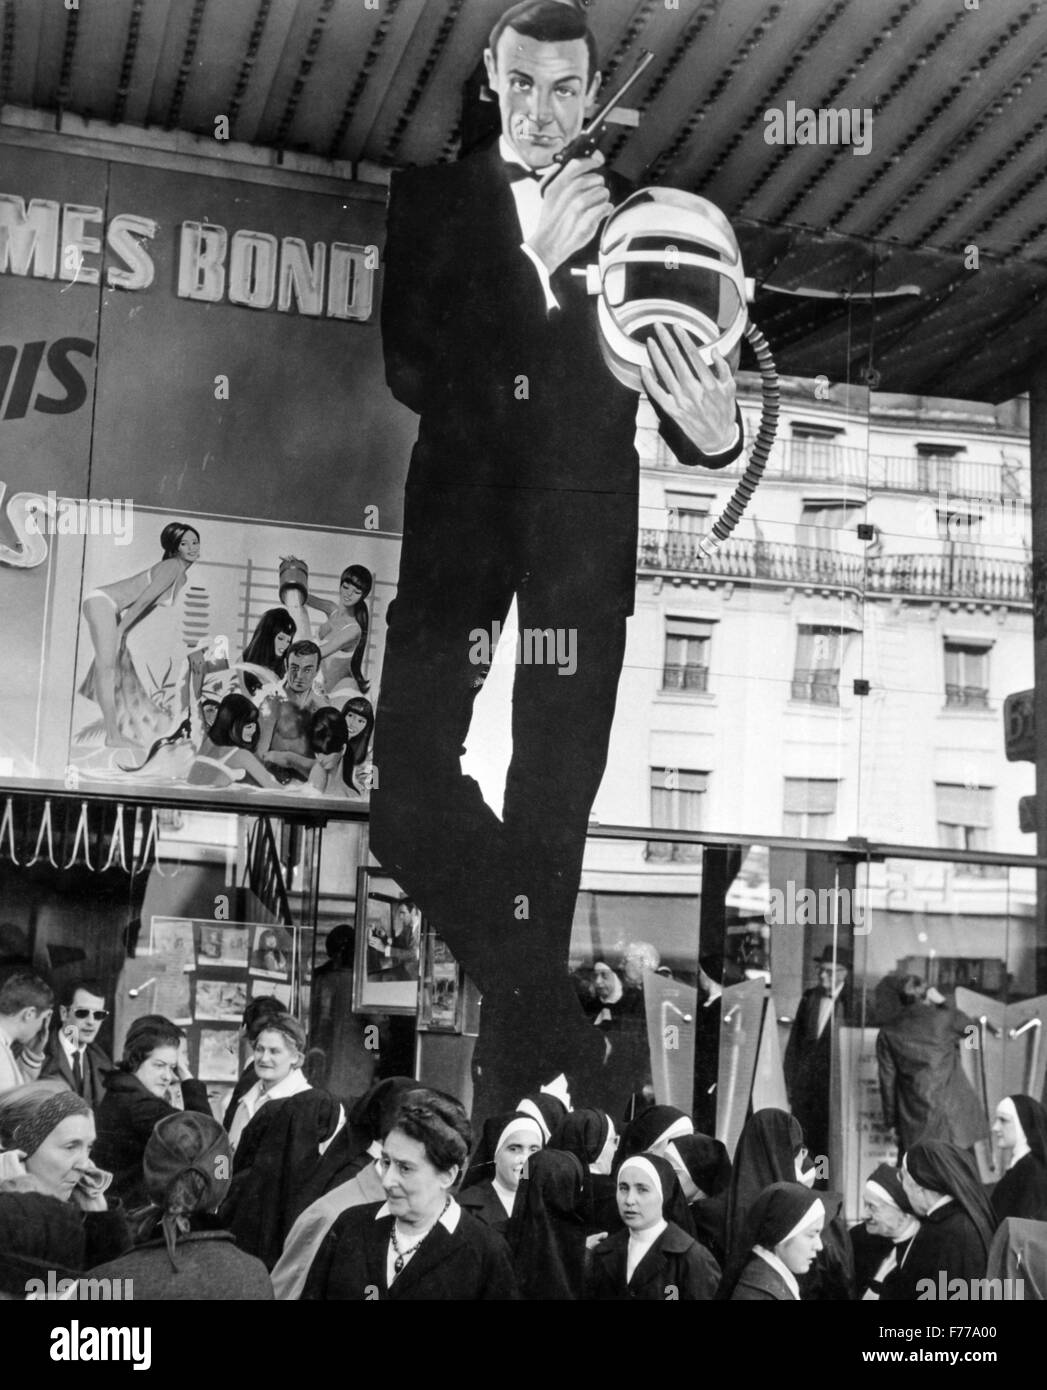 Affiche du film James Bond,Paris,France,1967 Banque D'Images